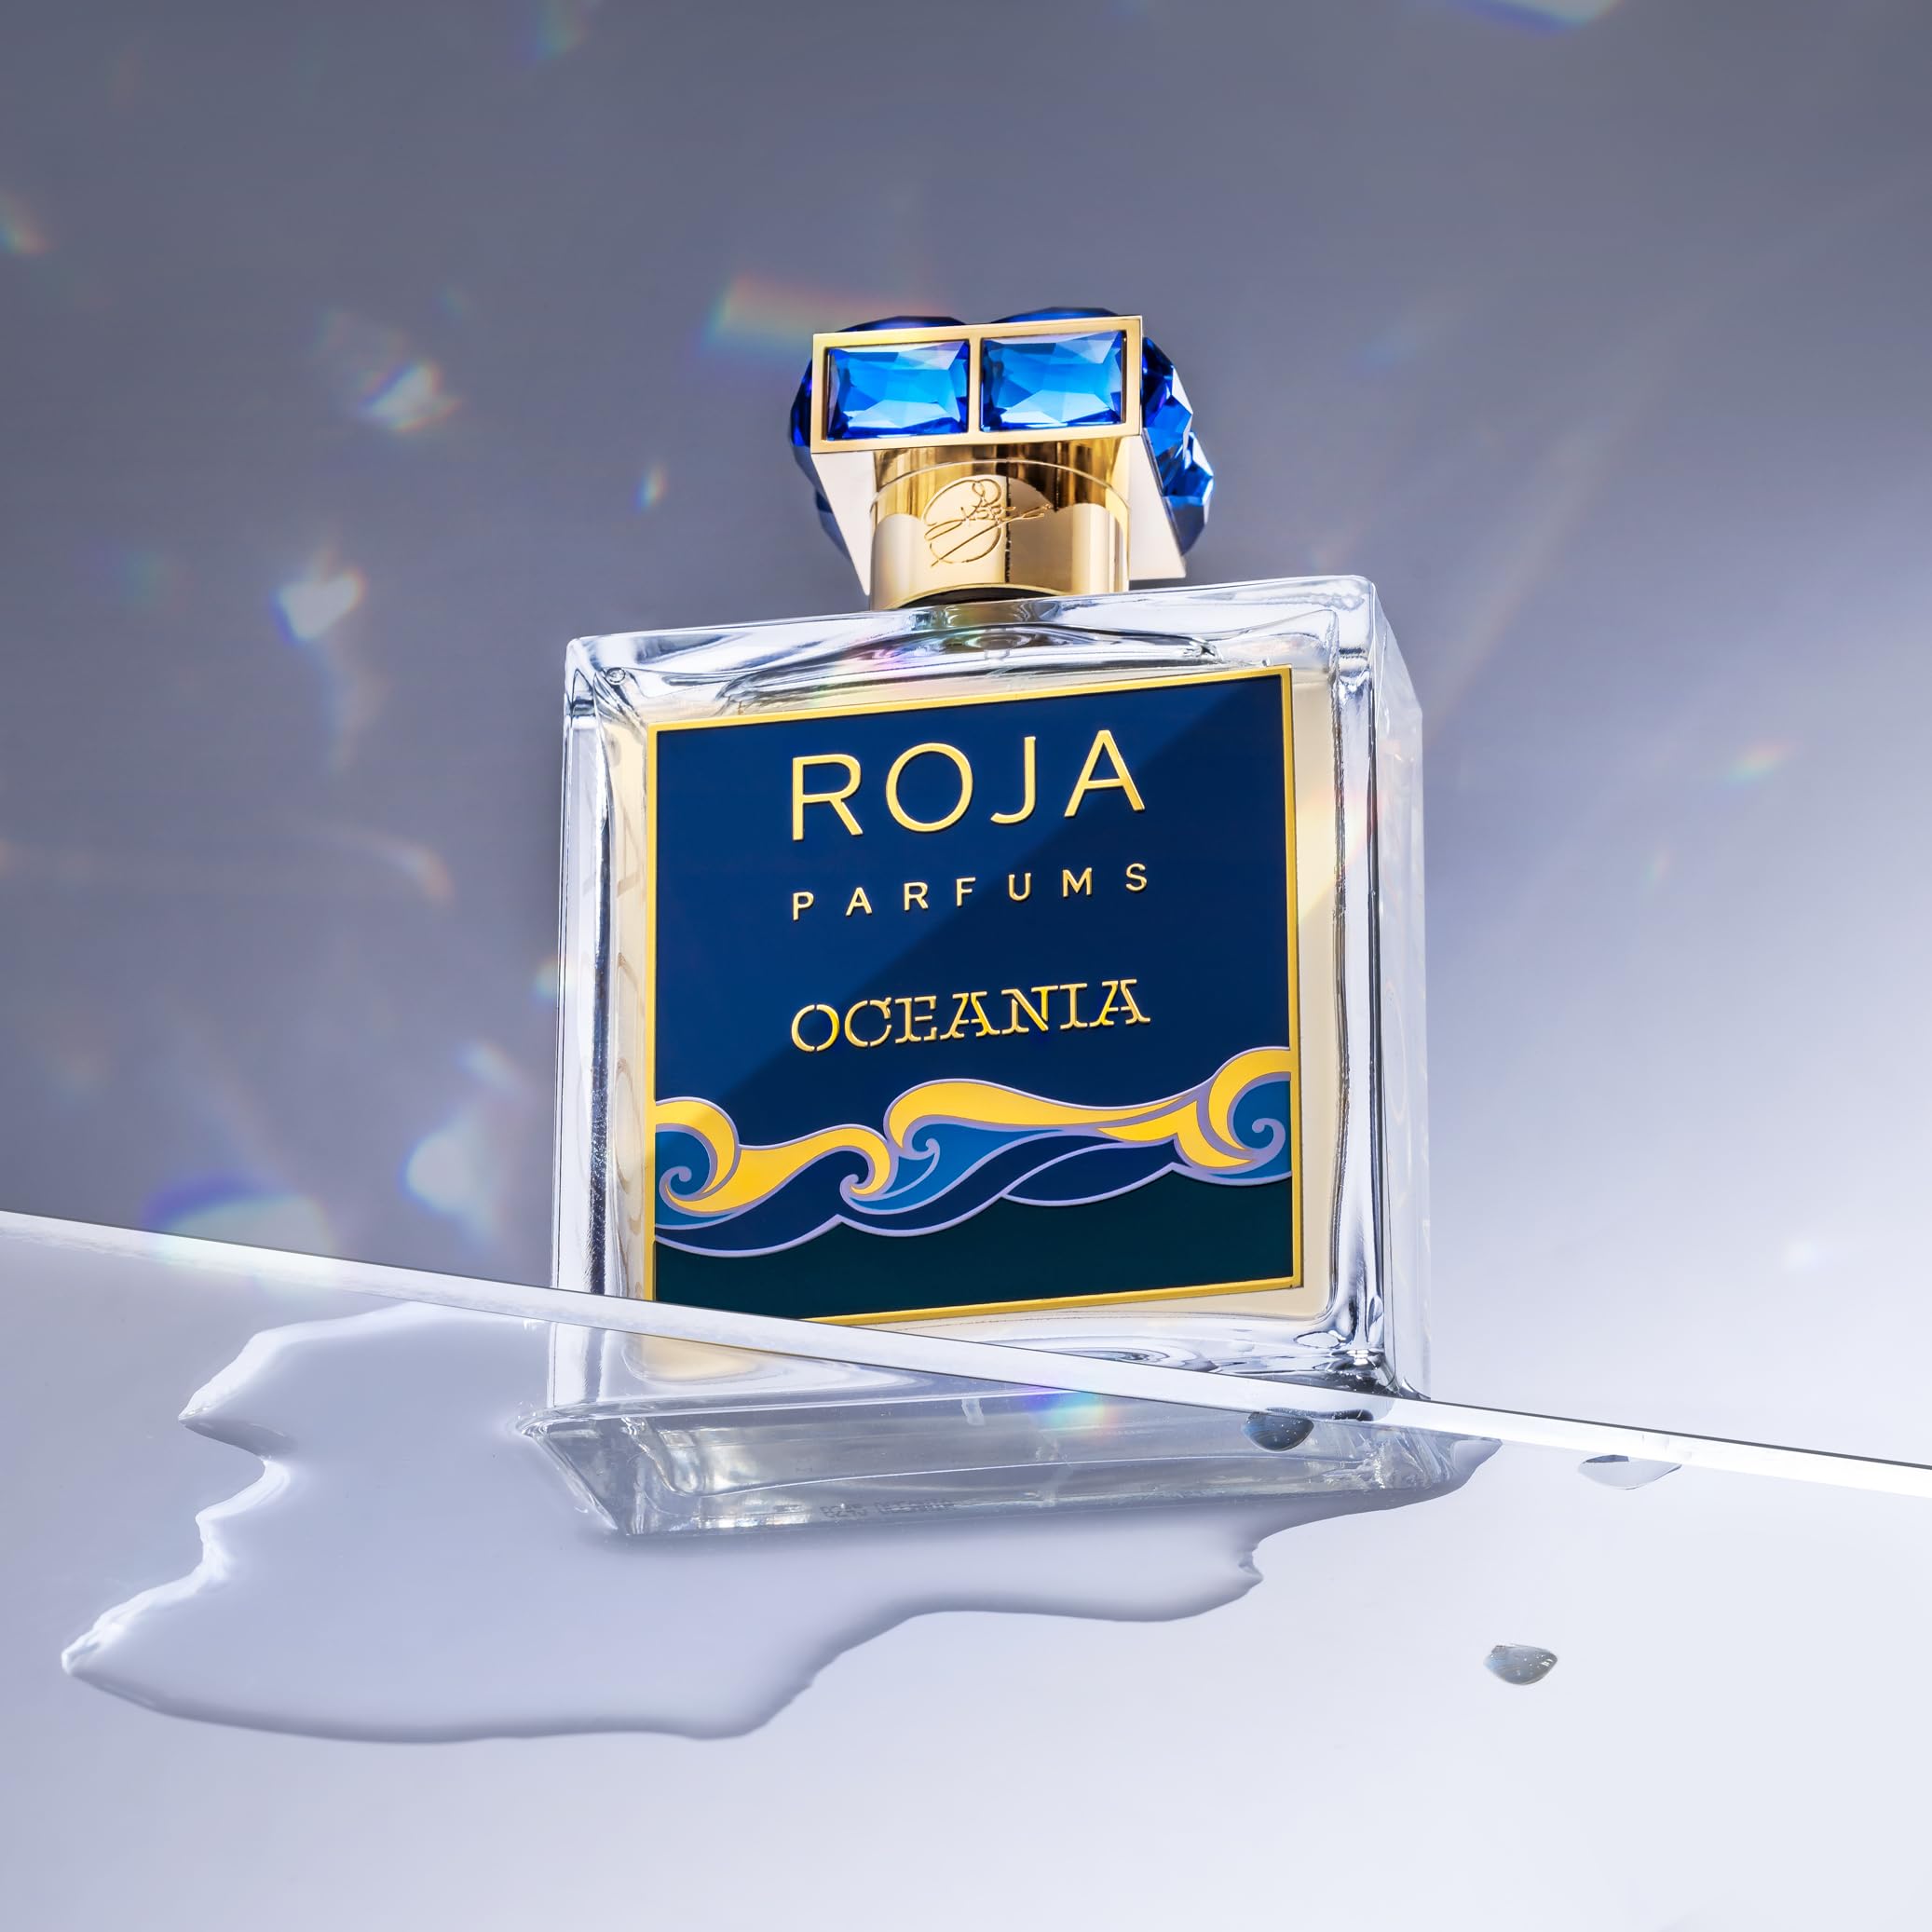 Roja Parfums, Oceania